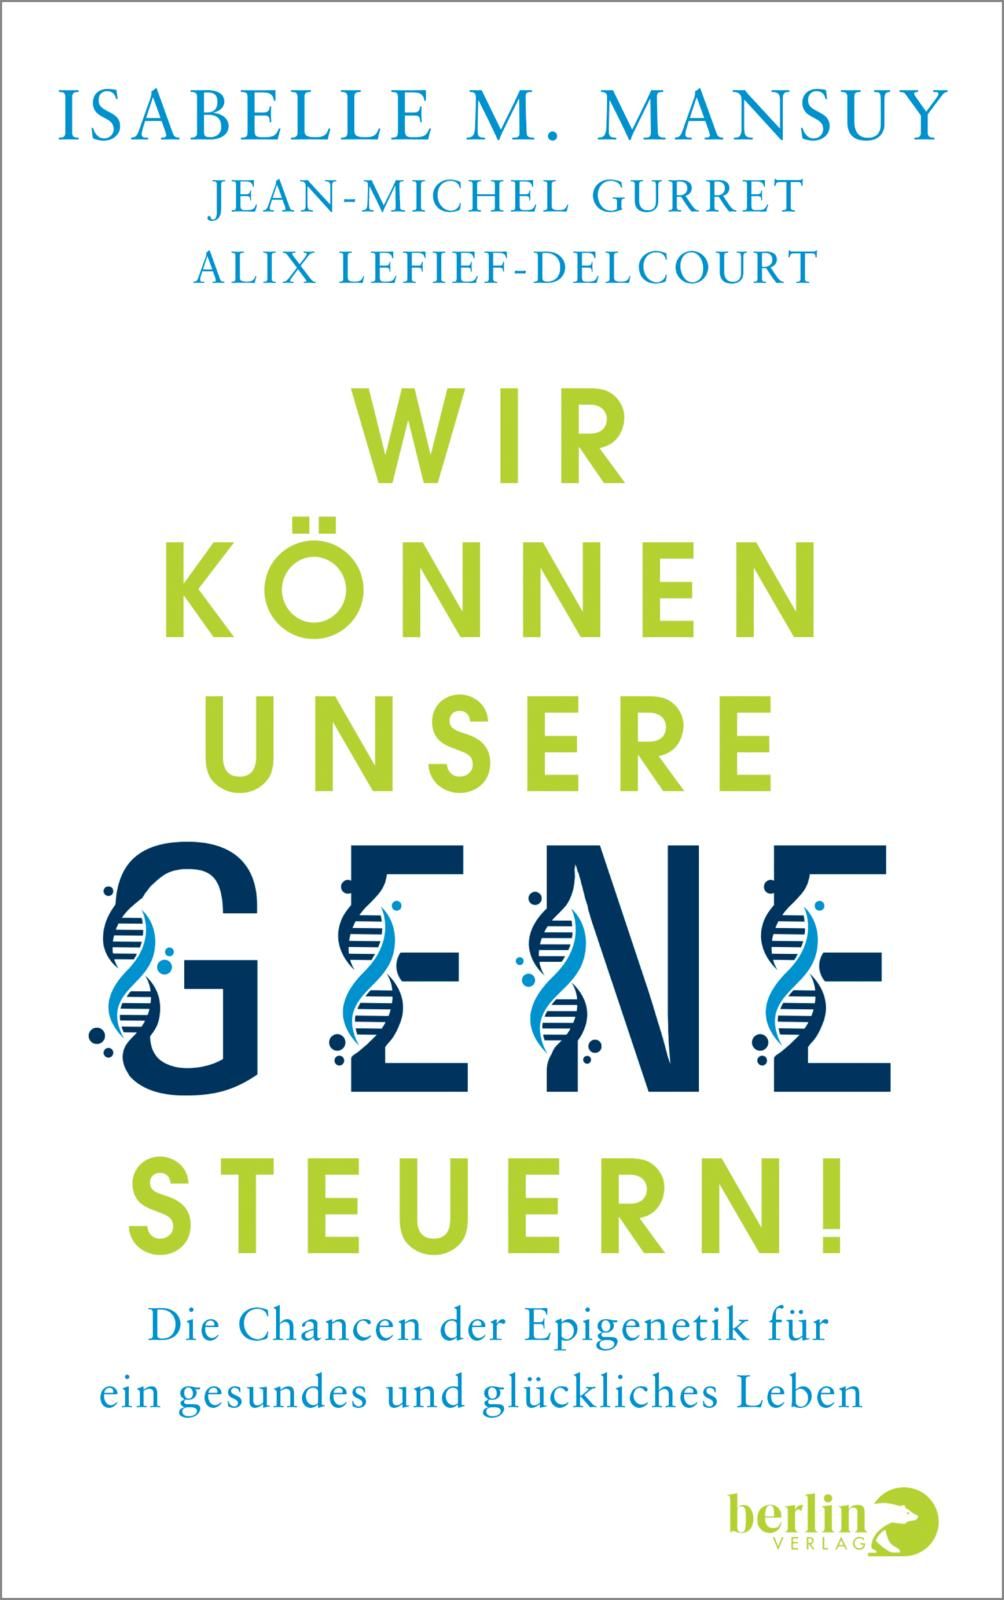 Auf weißem Hintergrund ist der Titel des Buches in grüner bzw. auch blauer Schrift dargestellt. Teile der Linien wurden jedoch durch DNA-Stränge ersetzt.